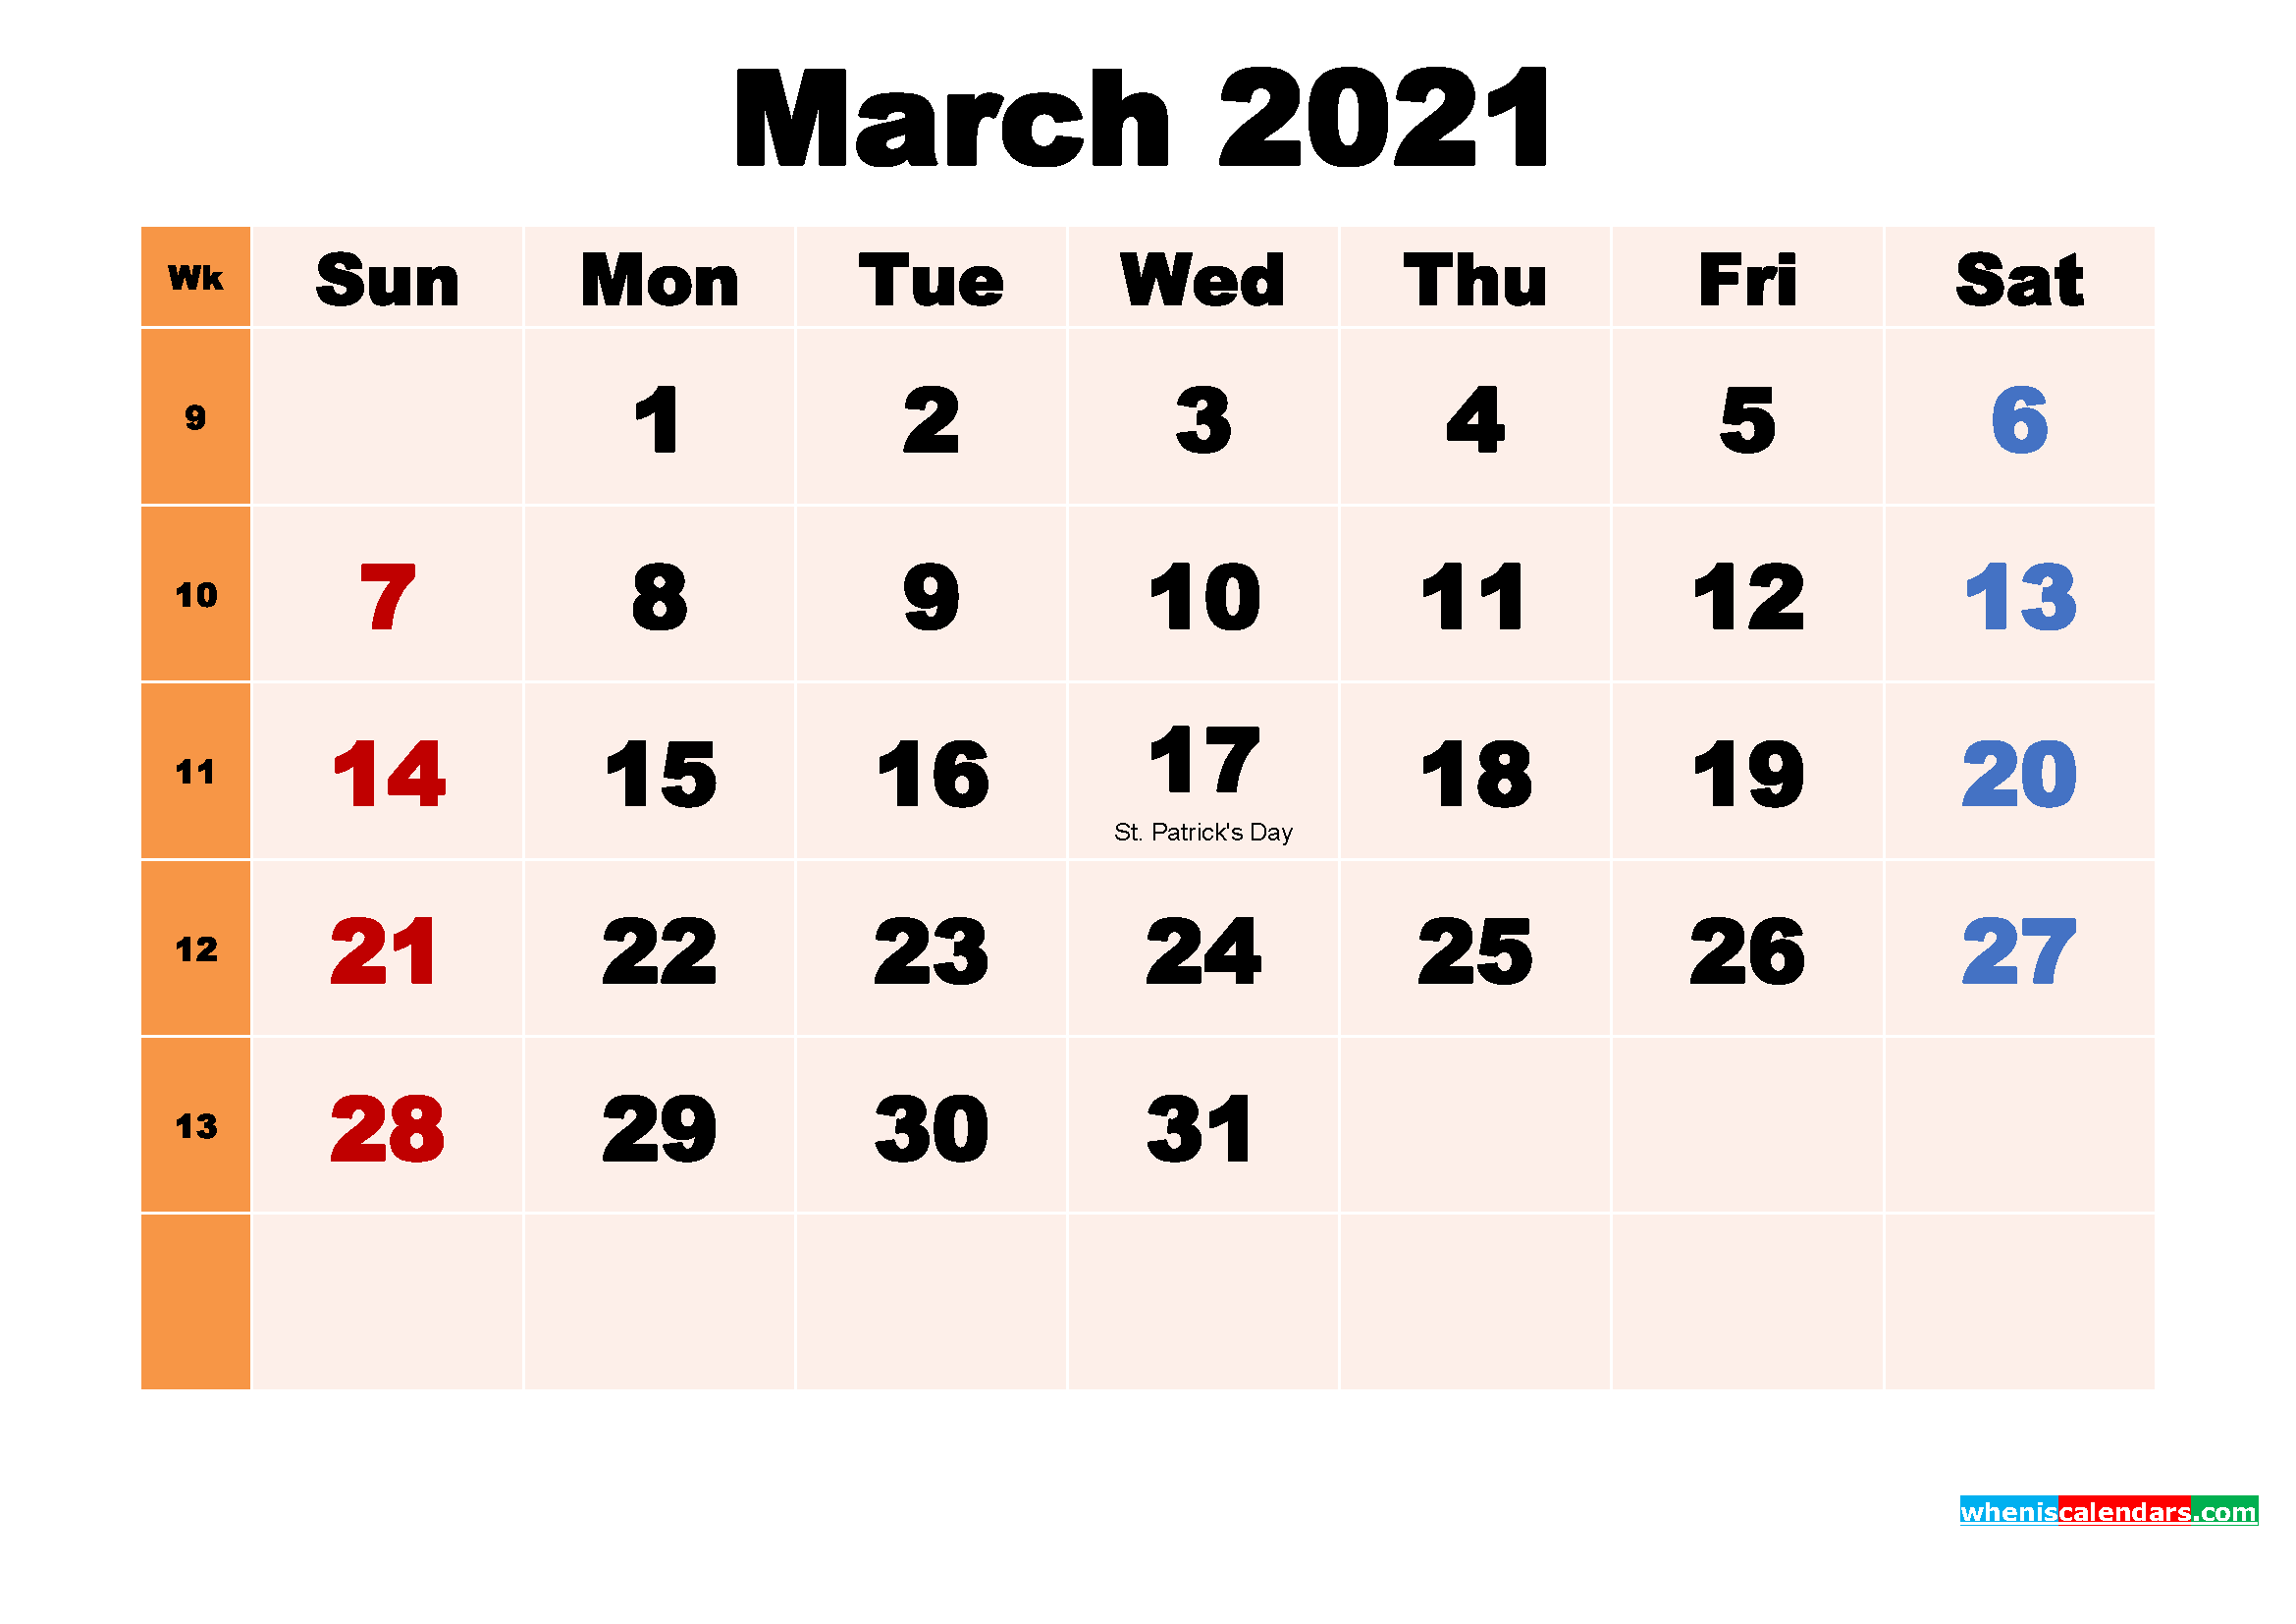 March 2021 Calendar Wallpaper Free March 2021 Calendar Background